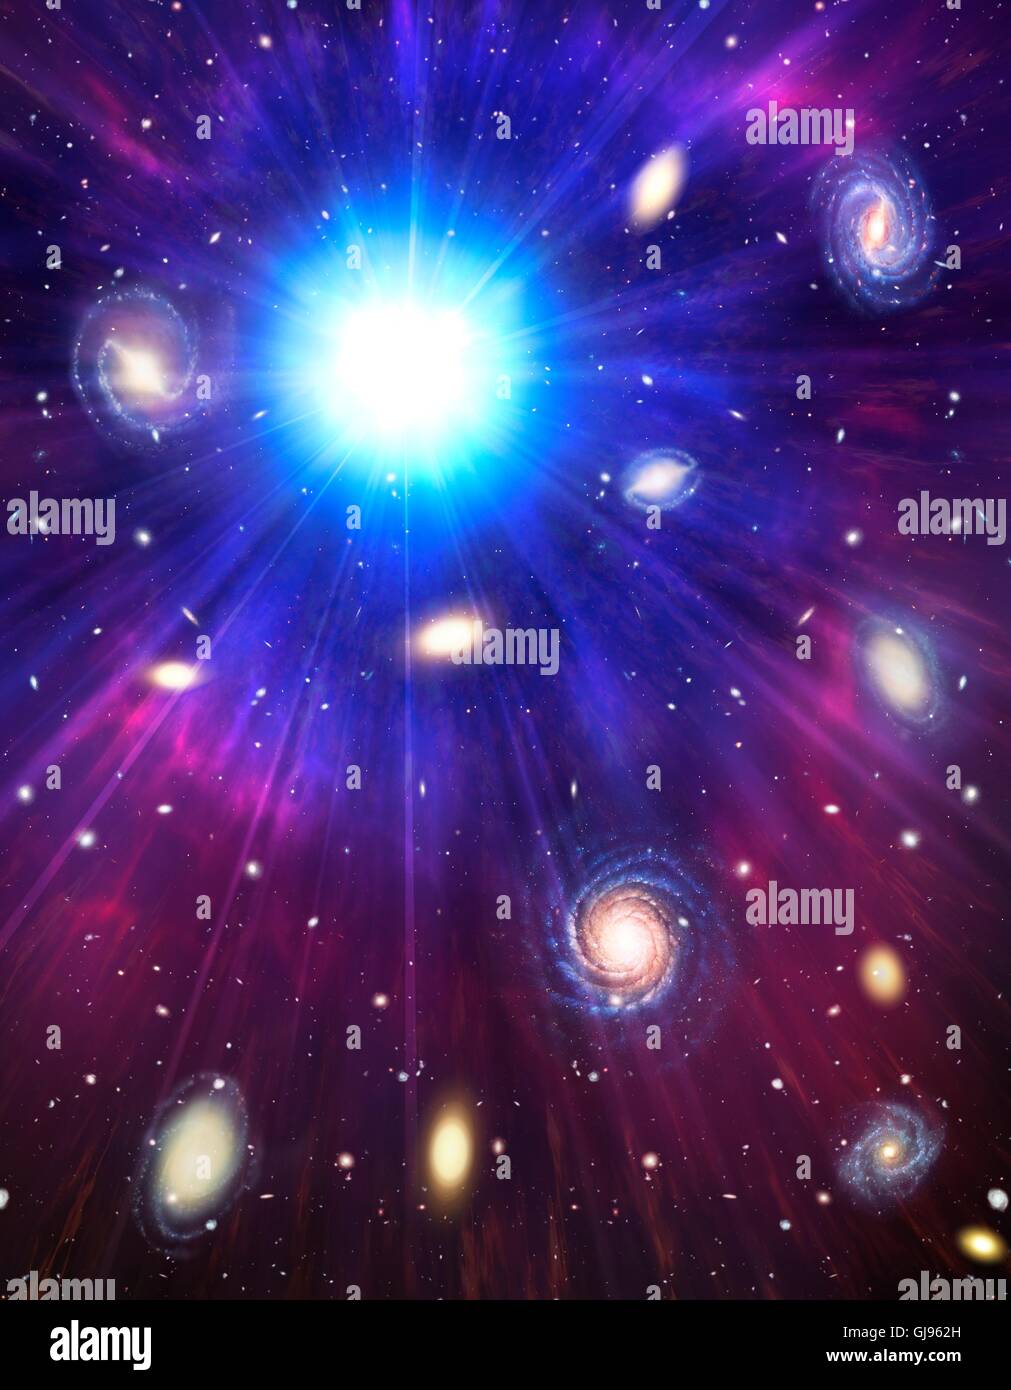 Big Bang, immagine concettuale. Illustrazione del computer che rappresenta l'origine dell'universo. Il termine Big Bang descrive la prima espansione di tutta la materia nell'universo da un infinitamente stato compatto 13,7 miliardi di anni fa. Le condizioni iniziali non sono noti, ma meno di un secondo dopo l'inizio, le temperature erano di trilioni di gradi Celsius e l'universo primordiale era molto più piccola di un atomo. Essa è stata l'espansione ed il raffreddamento fin. La materia formata e raggruppata in galassie che sono osservati da un movimento di allontanamento reciproco. Radiazione di fondo nel Foto Stock